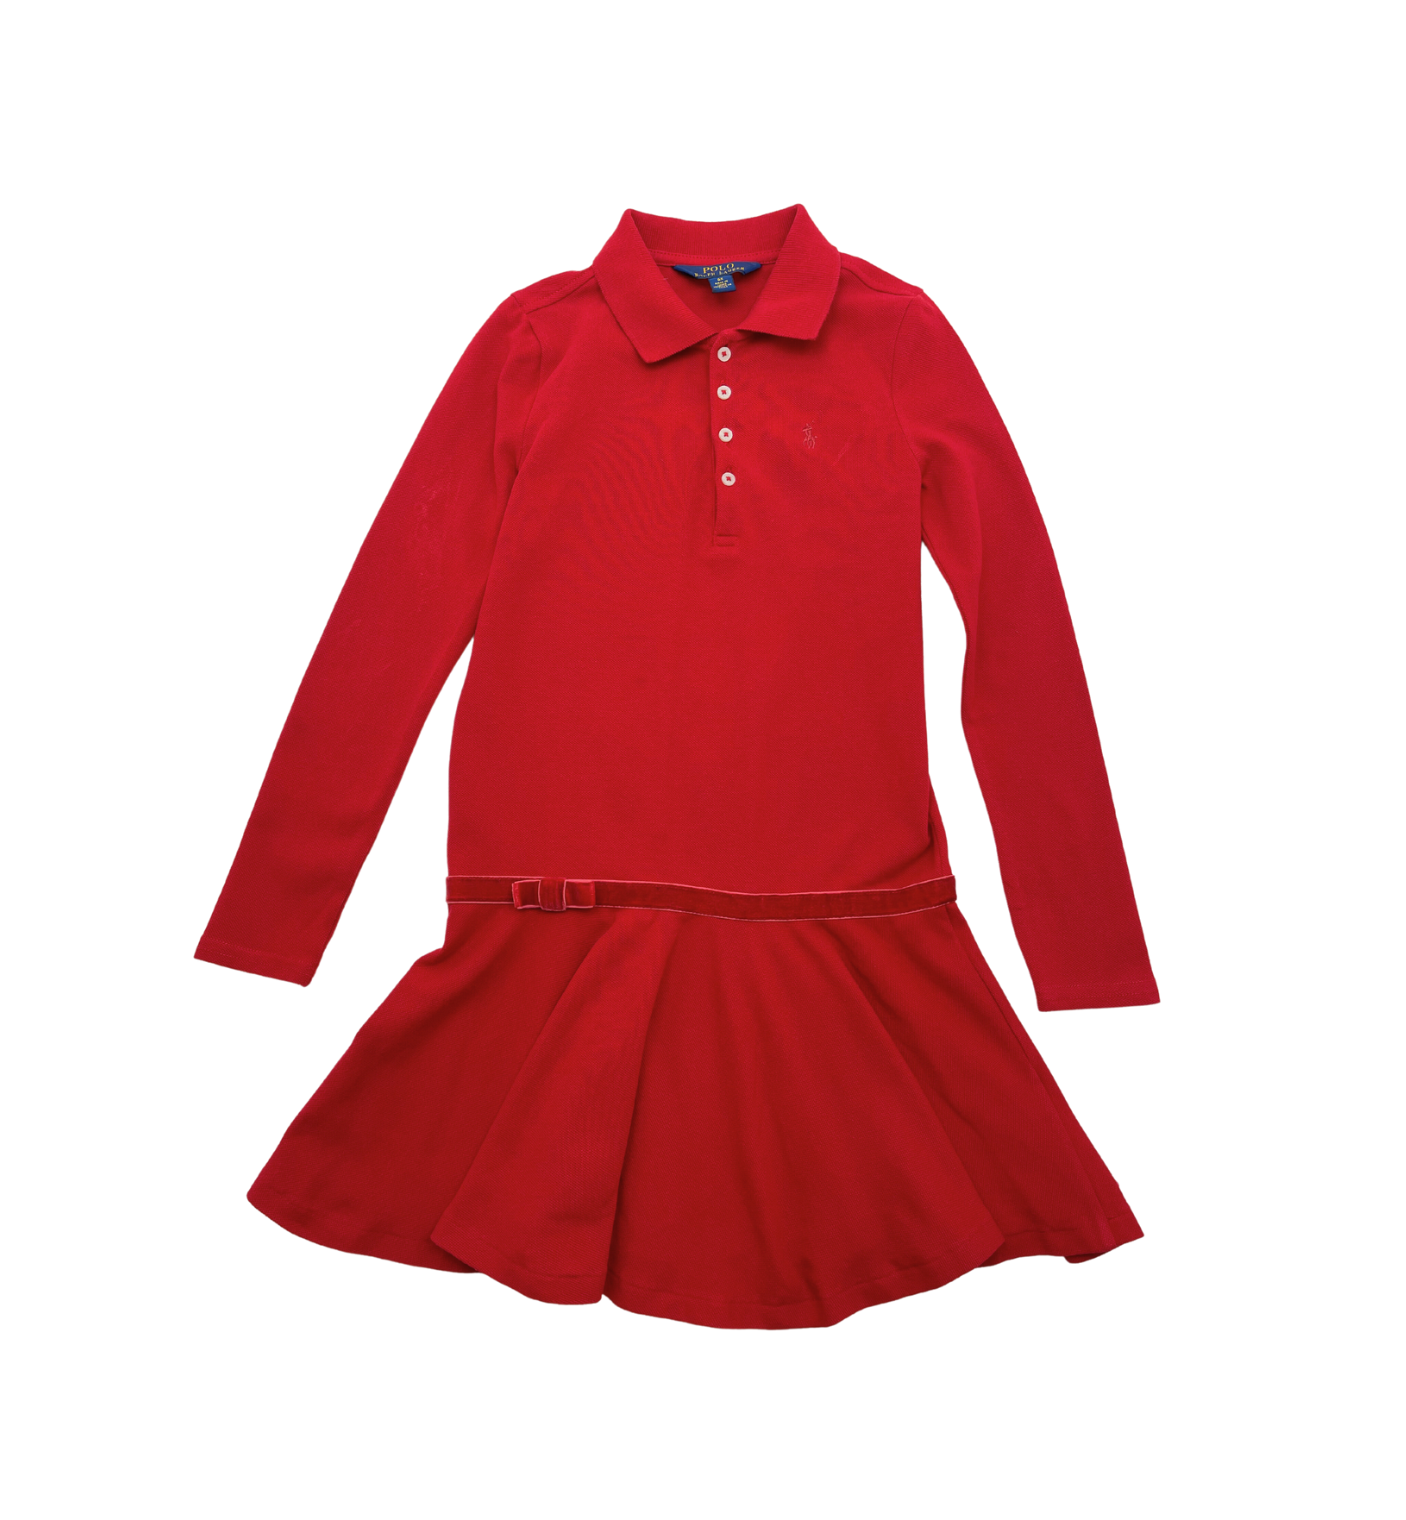 RALPH LAUREN - Robe rouge - 6 ans